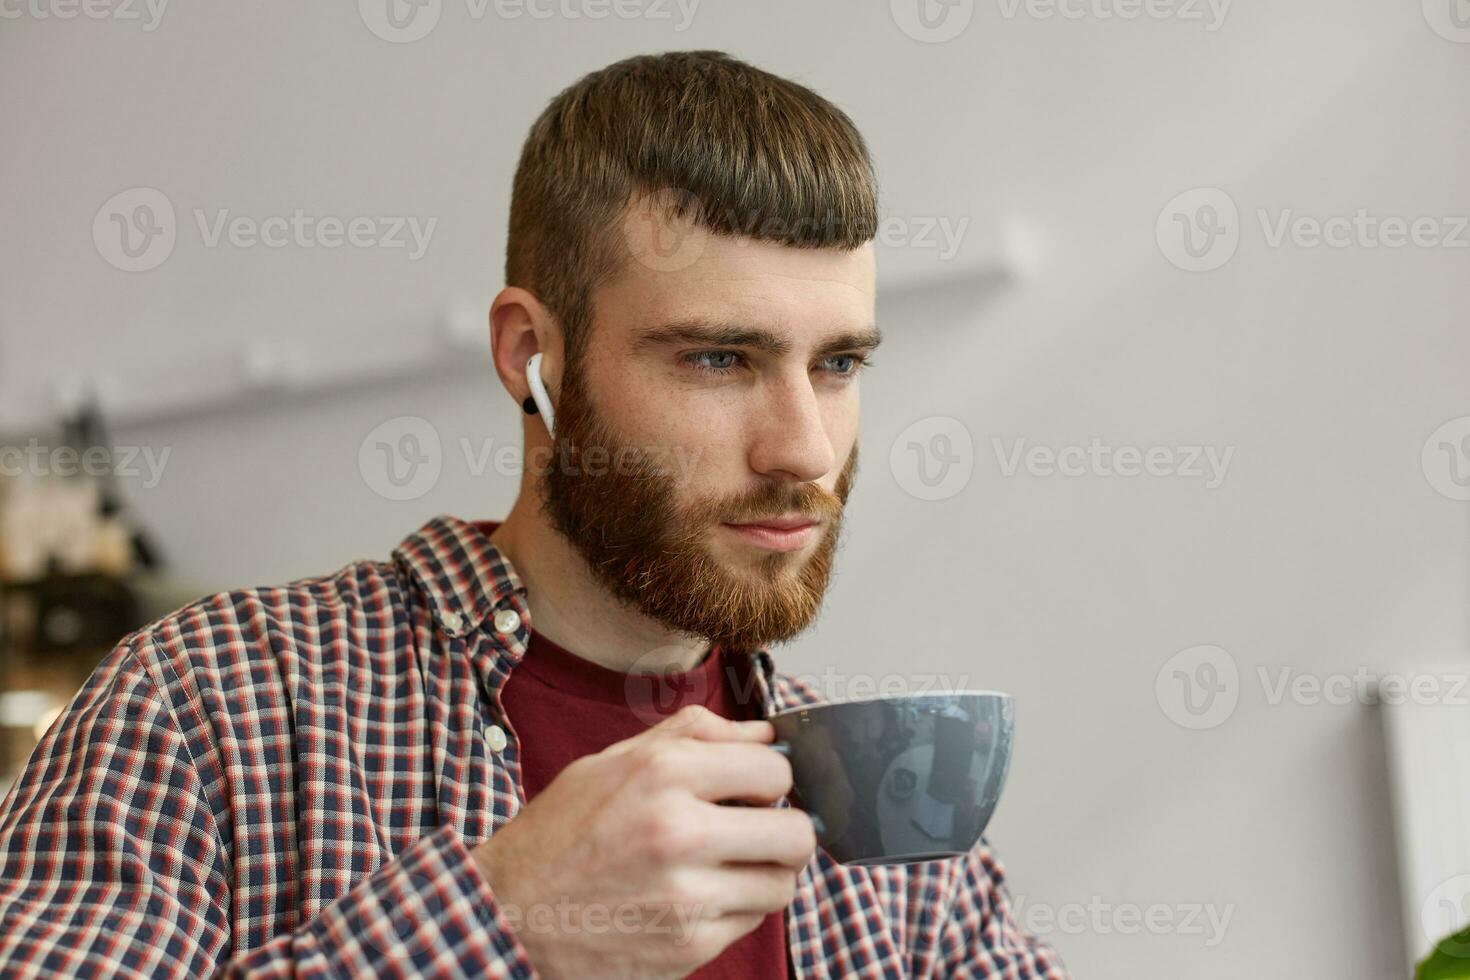 Foto von jung attraktiv Ingwer bärtig Mann halten ein grau Kaffee Tasse, spiegelt auf Pläne zum Morgen und suchen weg, tragen im Basic Kleidung.